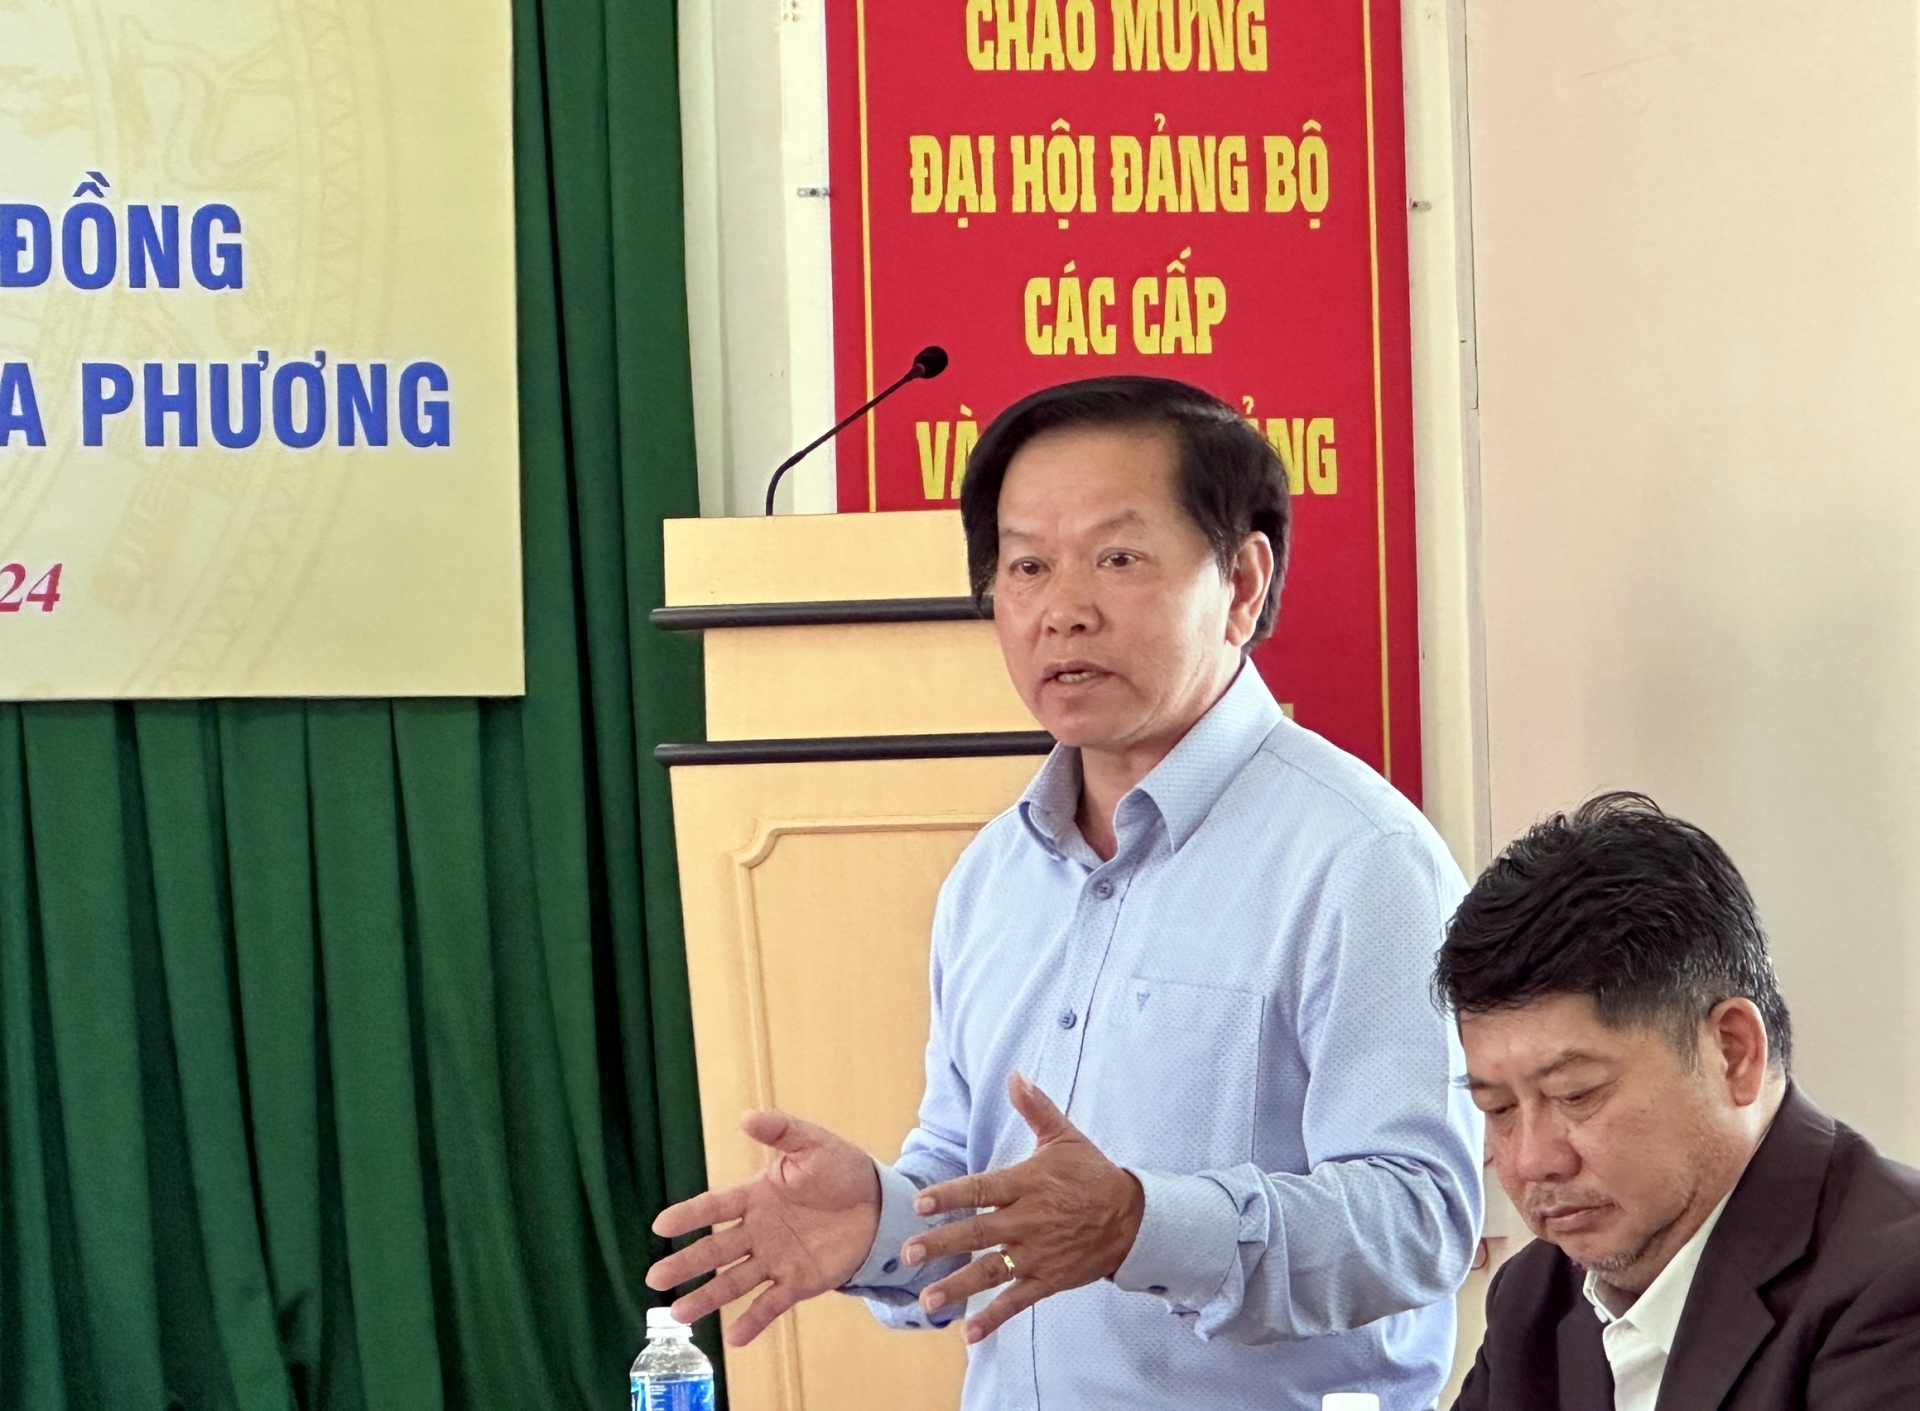 Ông Nguyễn Cảnh - Trưởng phòng Quản lý Thu - Sổ thẻ (BHXH Lâm Đồng) thông tin về tình hình nợ BHXH, BHYT; cập nhật mới về chế độ chính sách BHXH, BHYT

